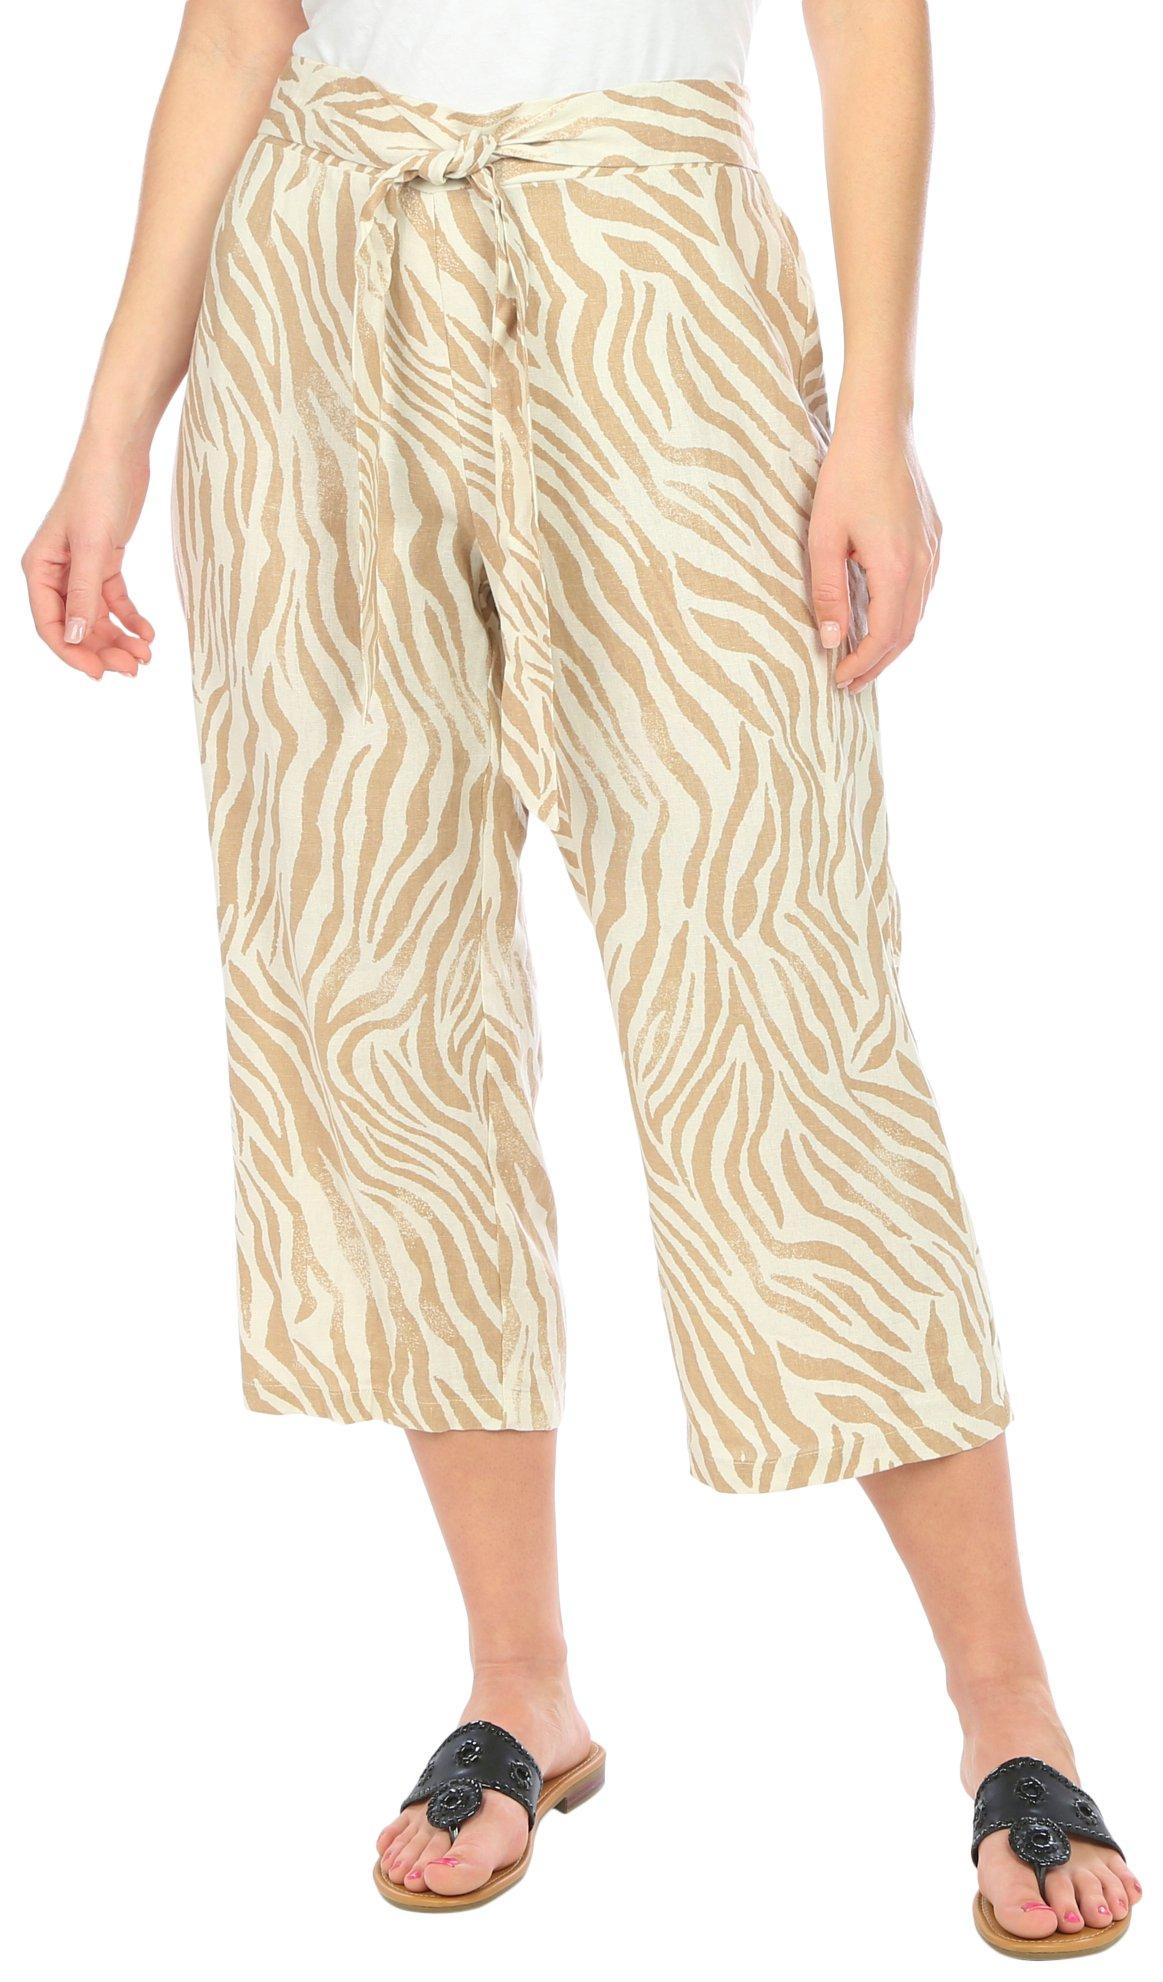 Womens Linen Shin Length Pants